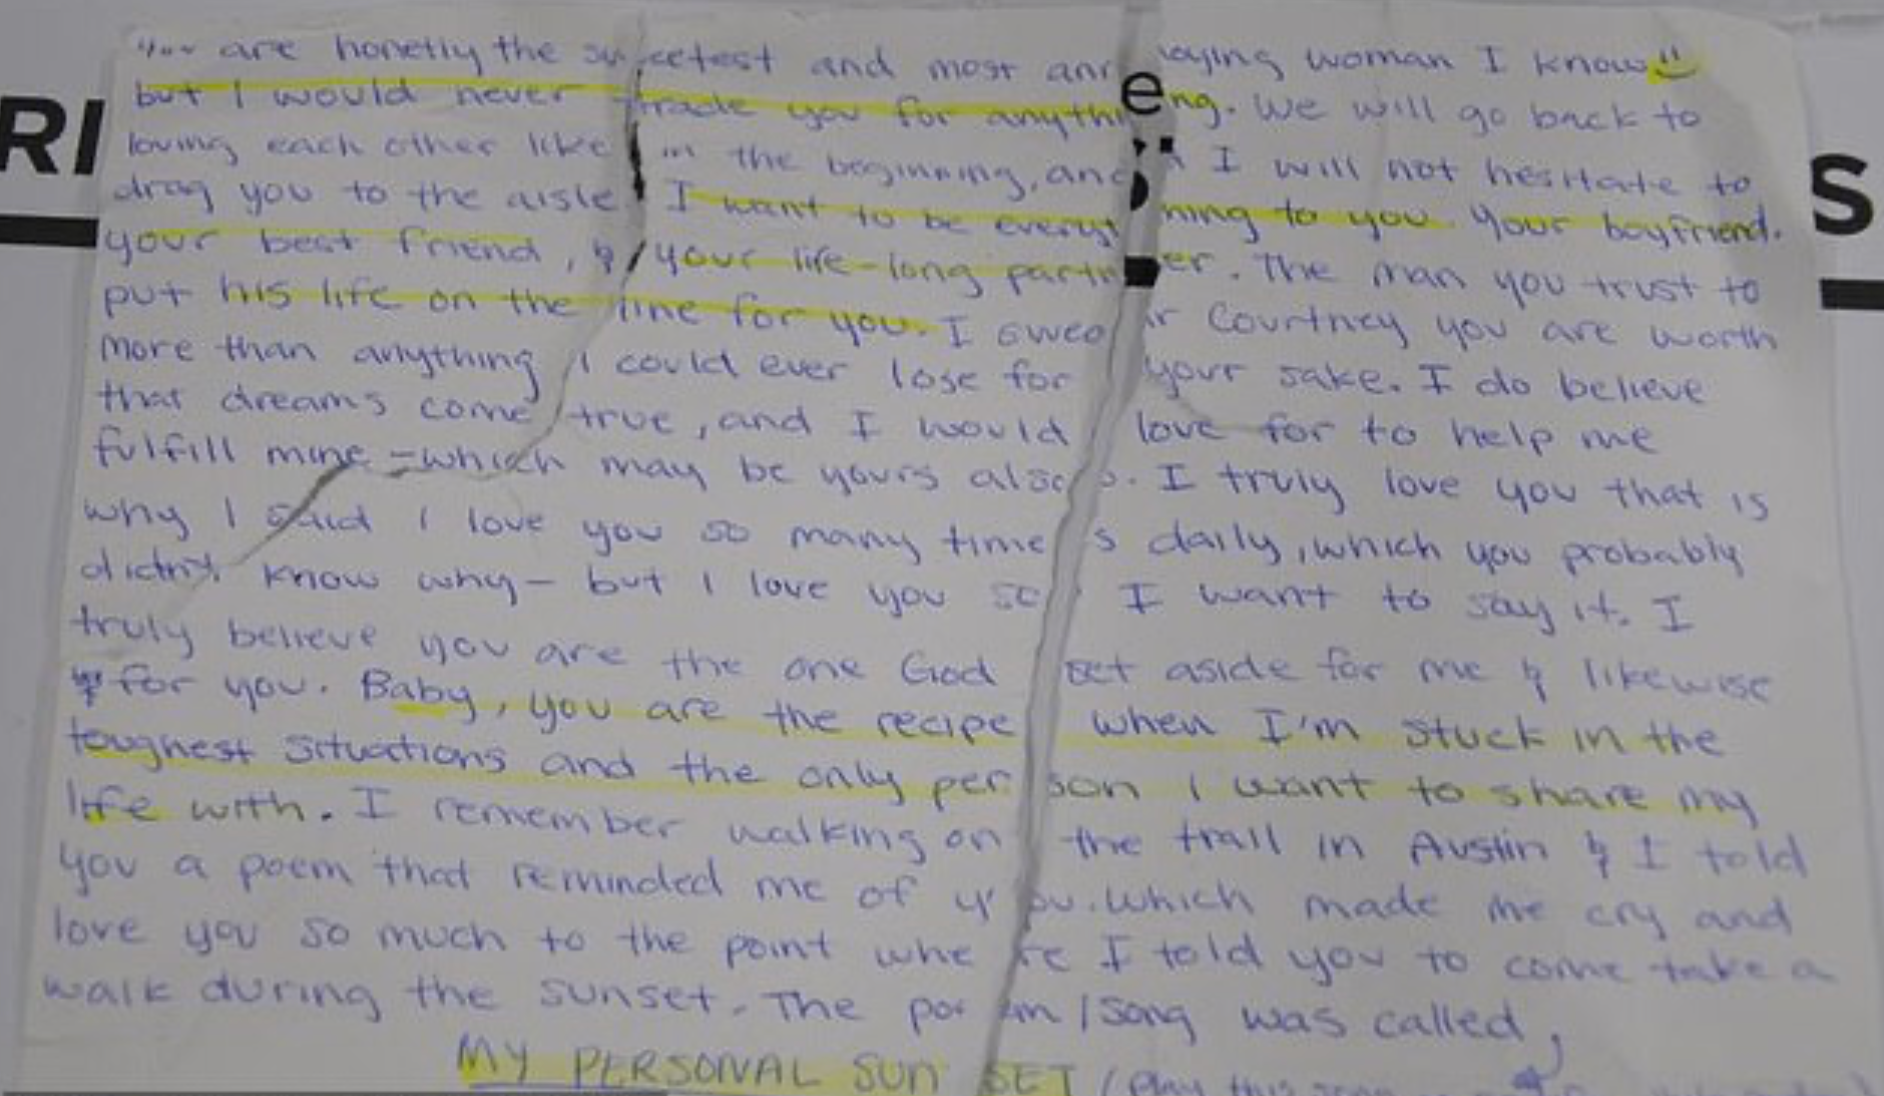 Una carta que parece que Christian Obumseli escribió a Courtney Clenney antes del presunto apuñalamiento